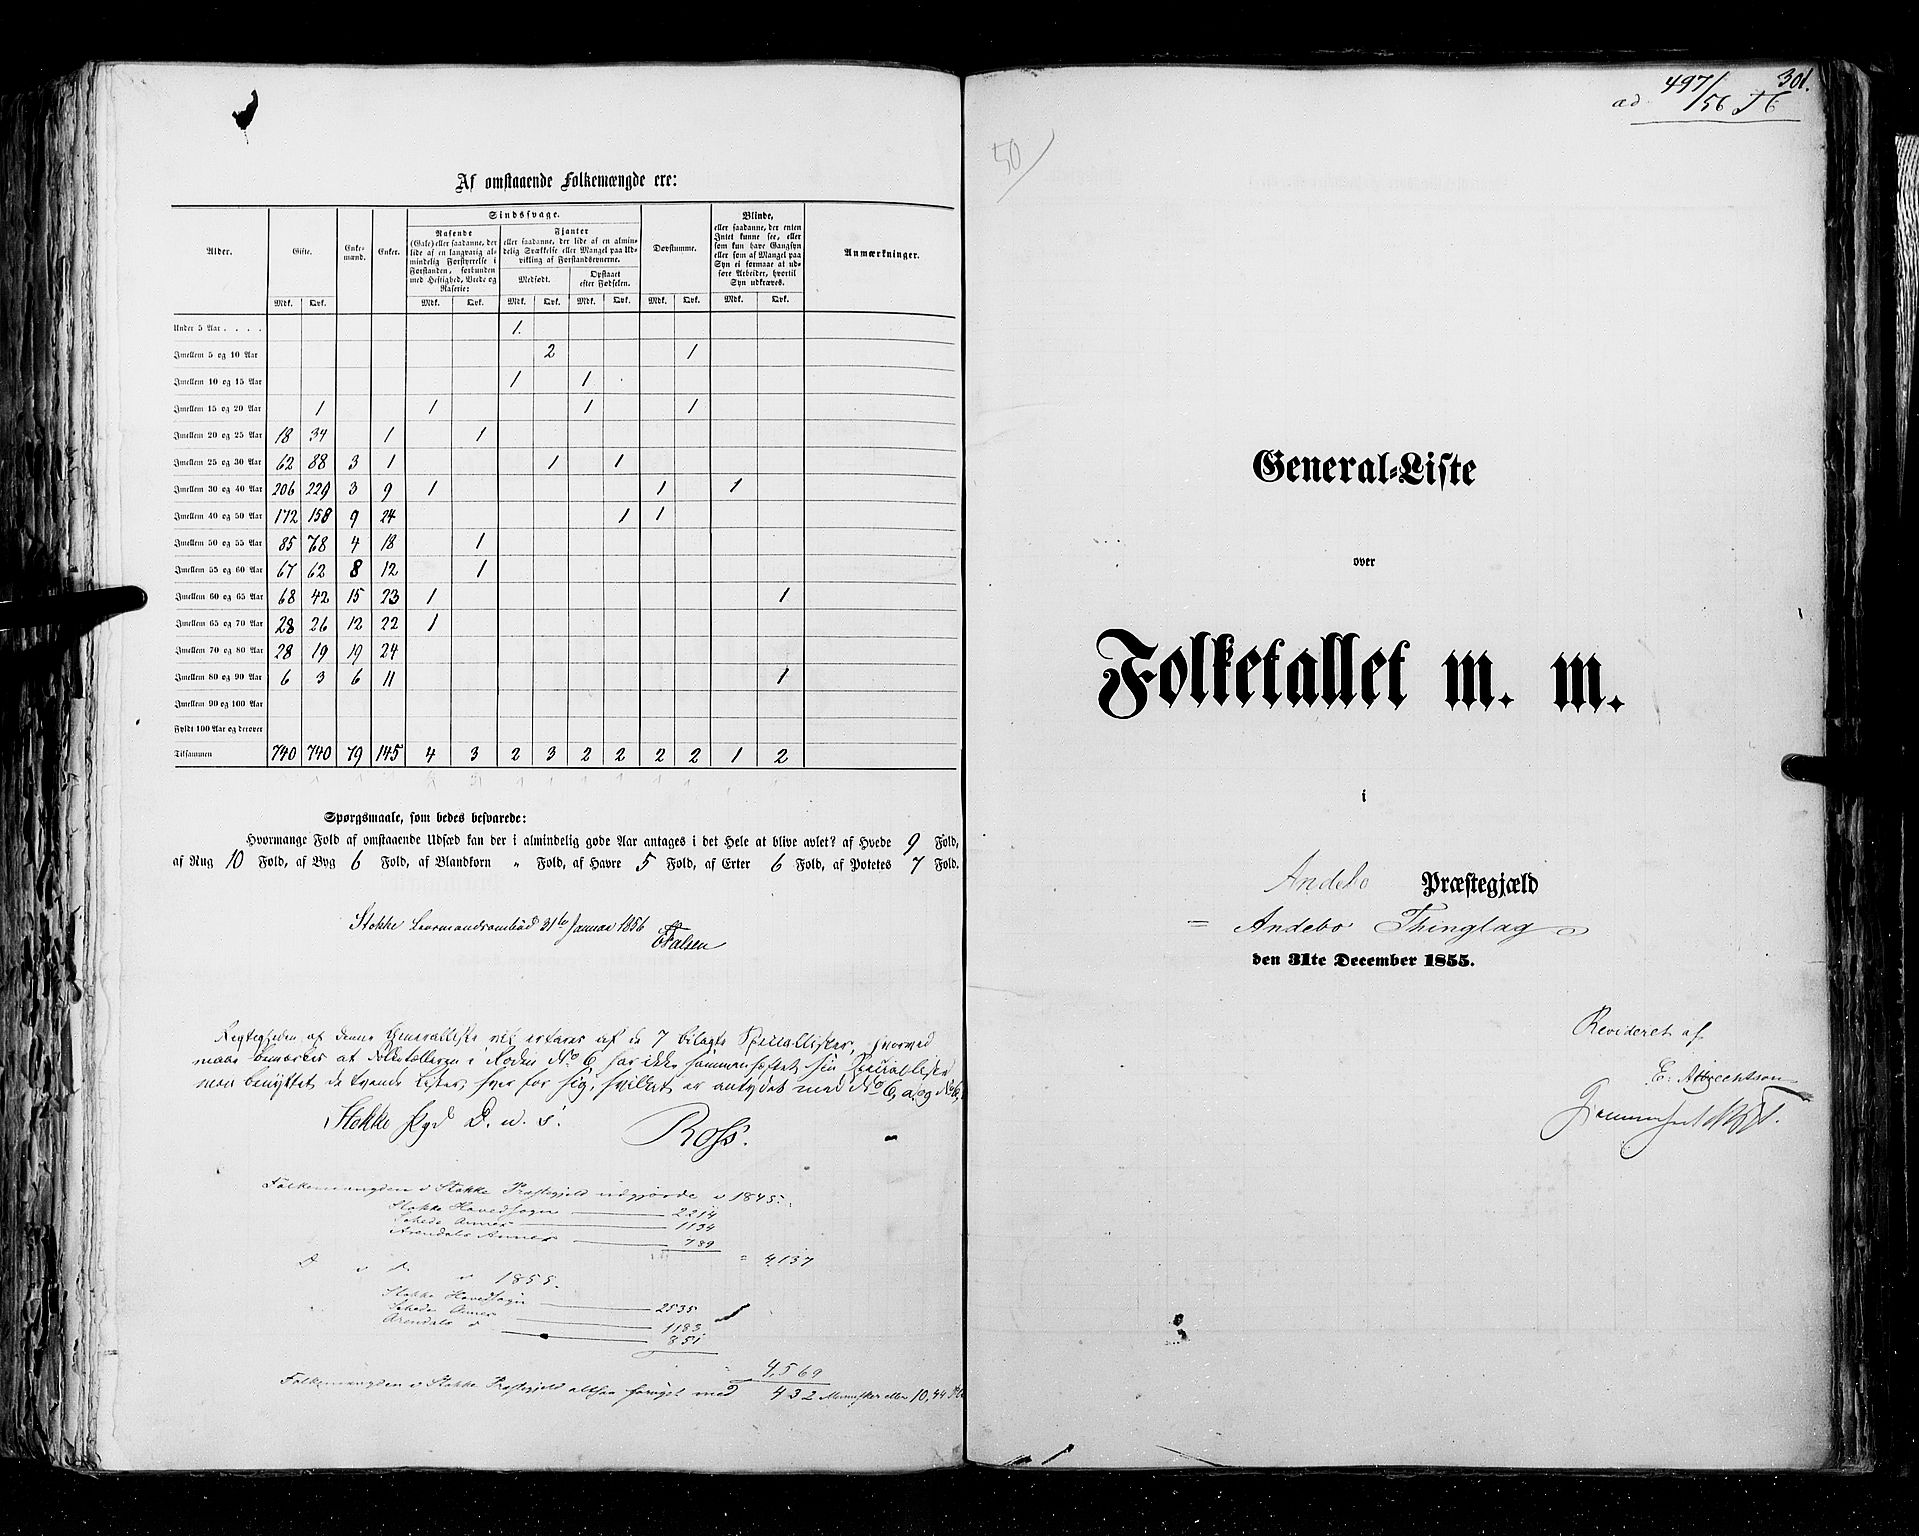 RA, Folketellingen 1855, bind 2: Kristians amt, Buskerud amt og Jarlsberg og Larvik amt, 1855, s. 301